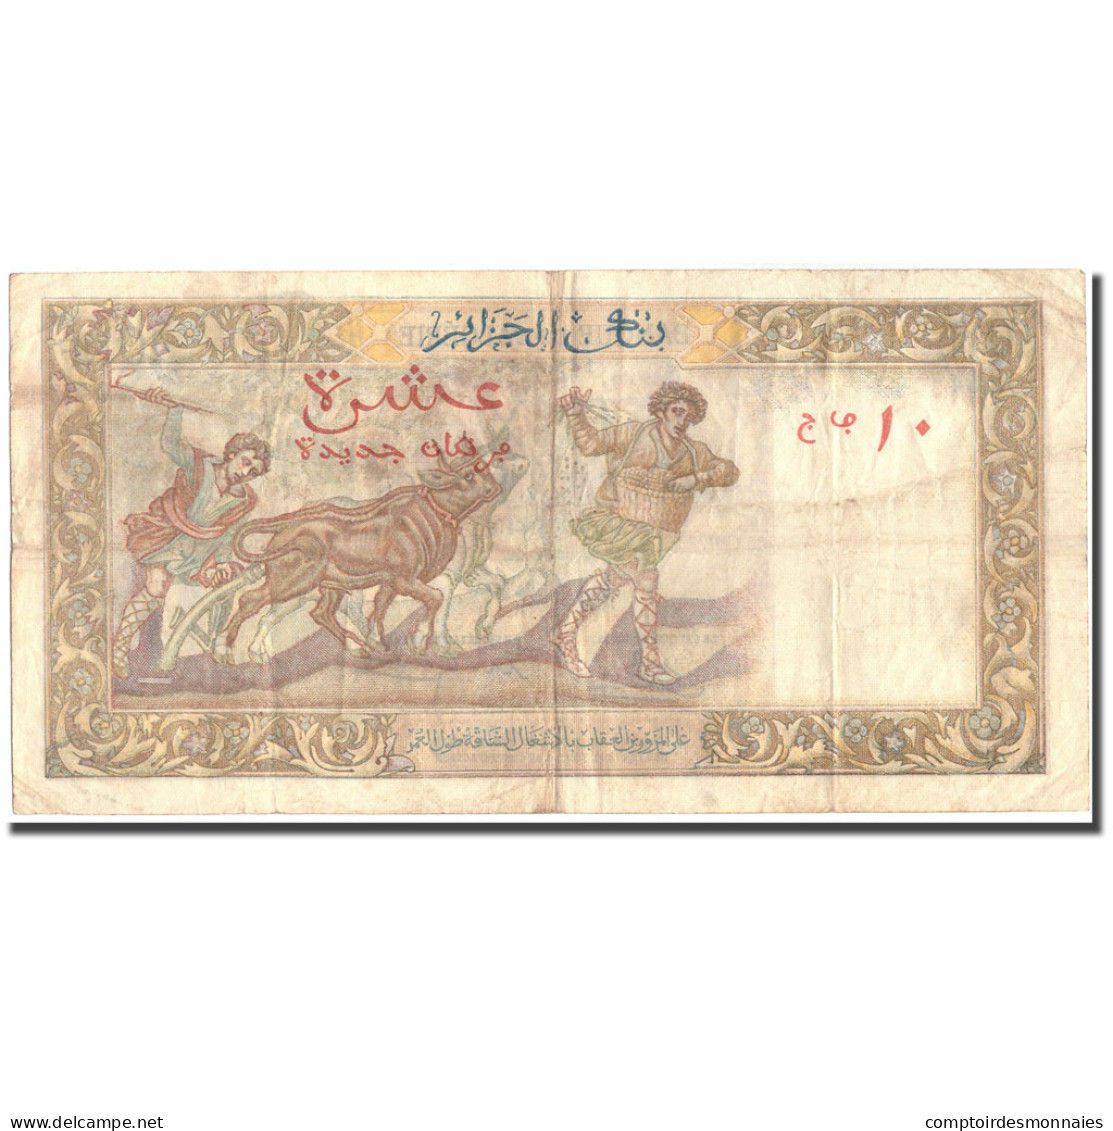 Billet, Algeria, 10 Nouveaux Francs, 1961, 1961-02-10, KM:119a, TB+ - Algeria